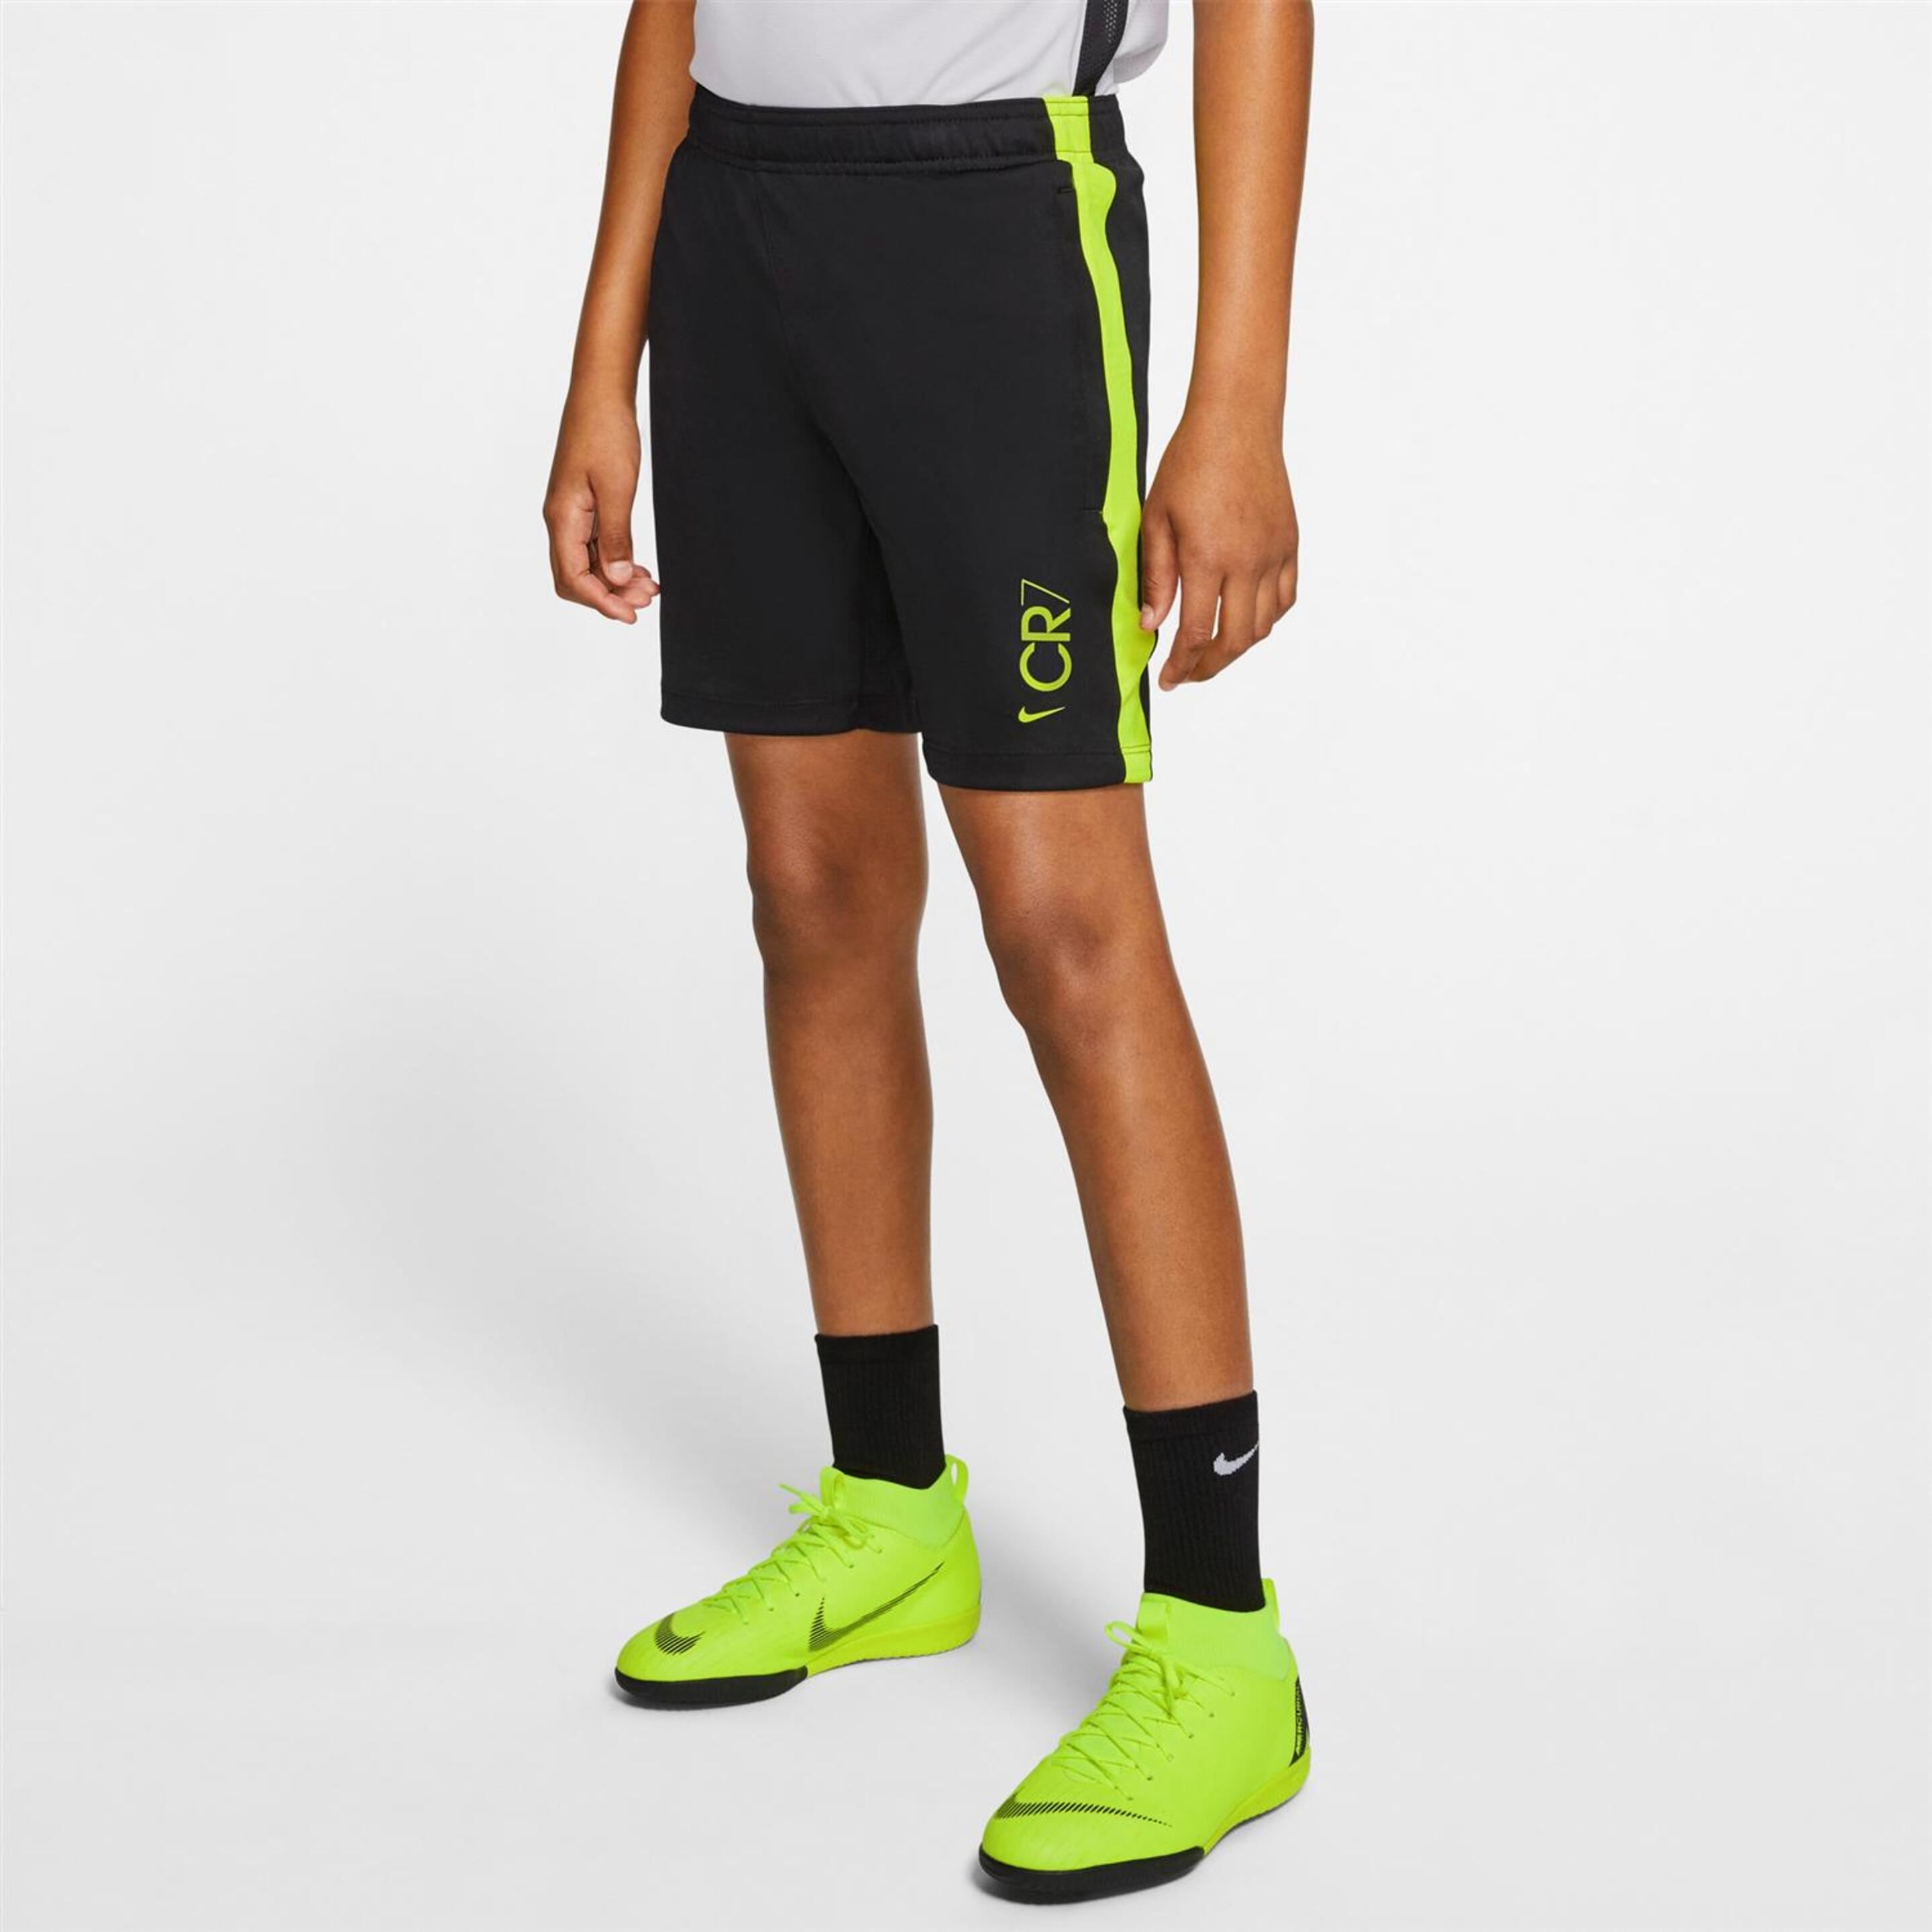 Pantalón Cr7 Nike